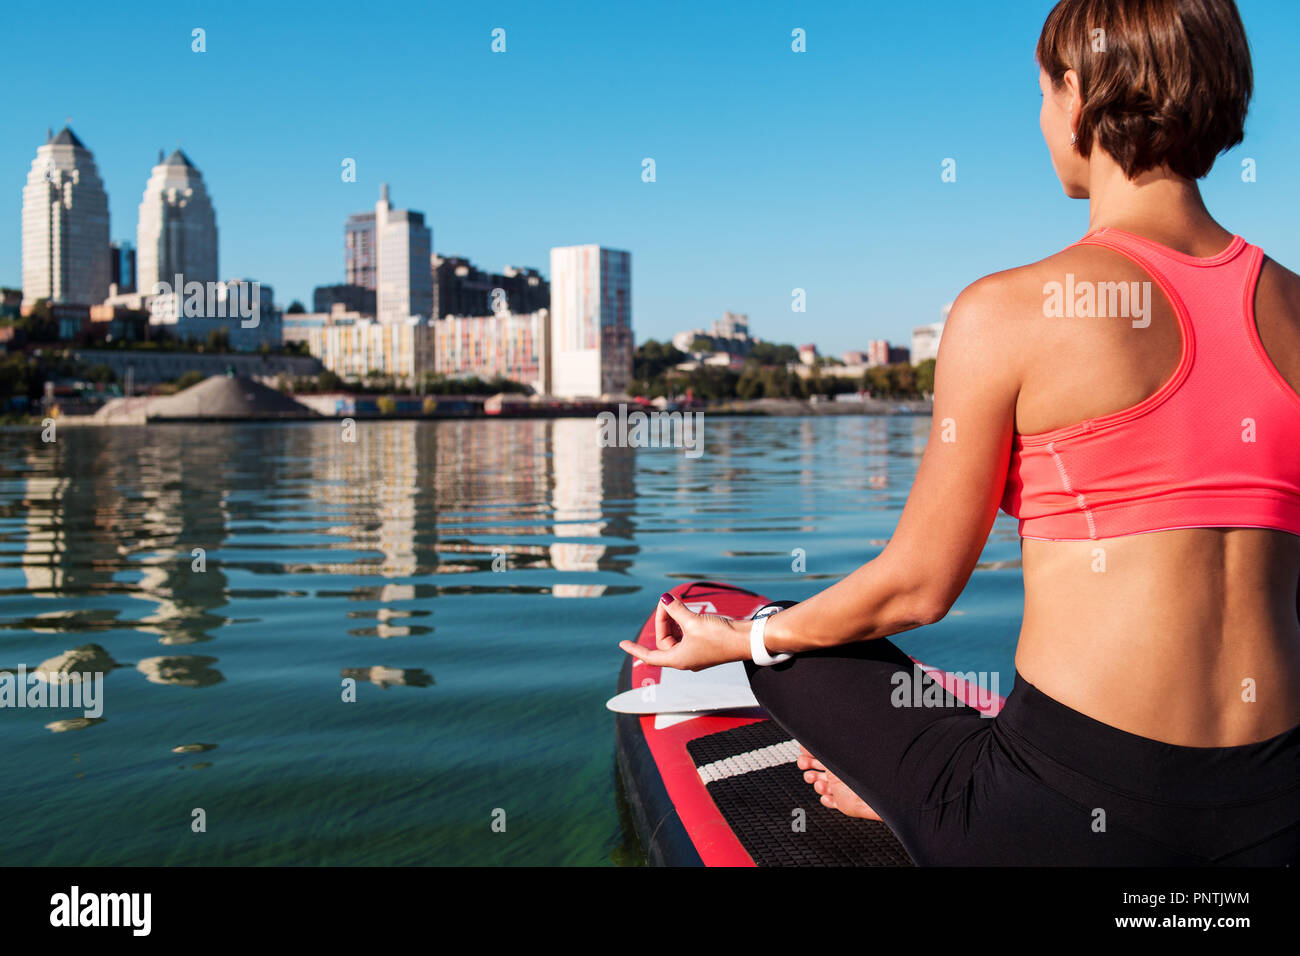 Stand Up Paddle board yoga effectué par belle fille sur la ville, l'arrière-plan lumineux sur l'eau formation de yoga Banque D'Images